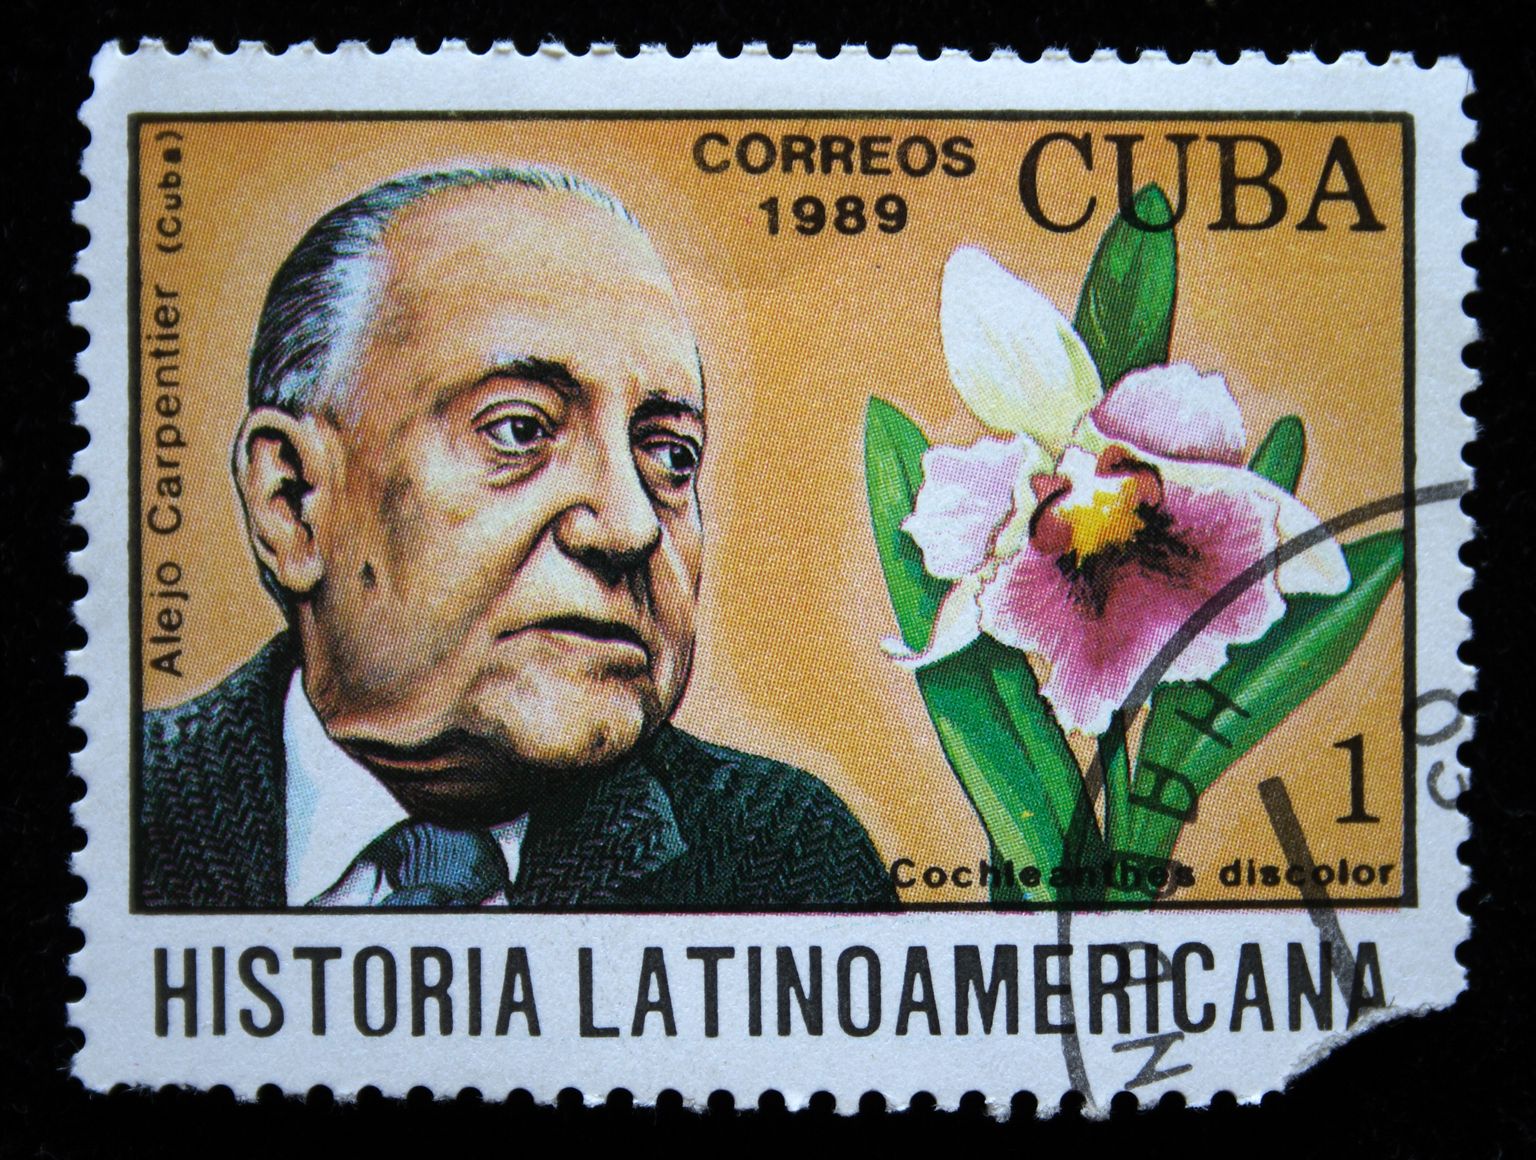 Alejo Carpentier Kuuba postmargil.